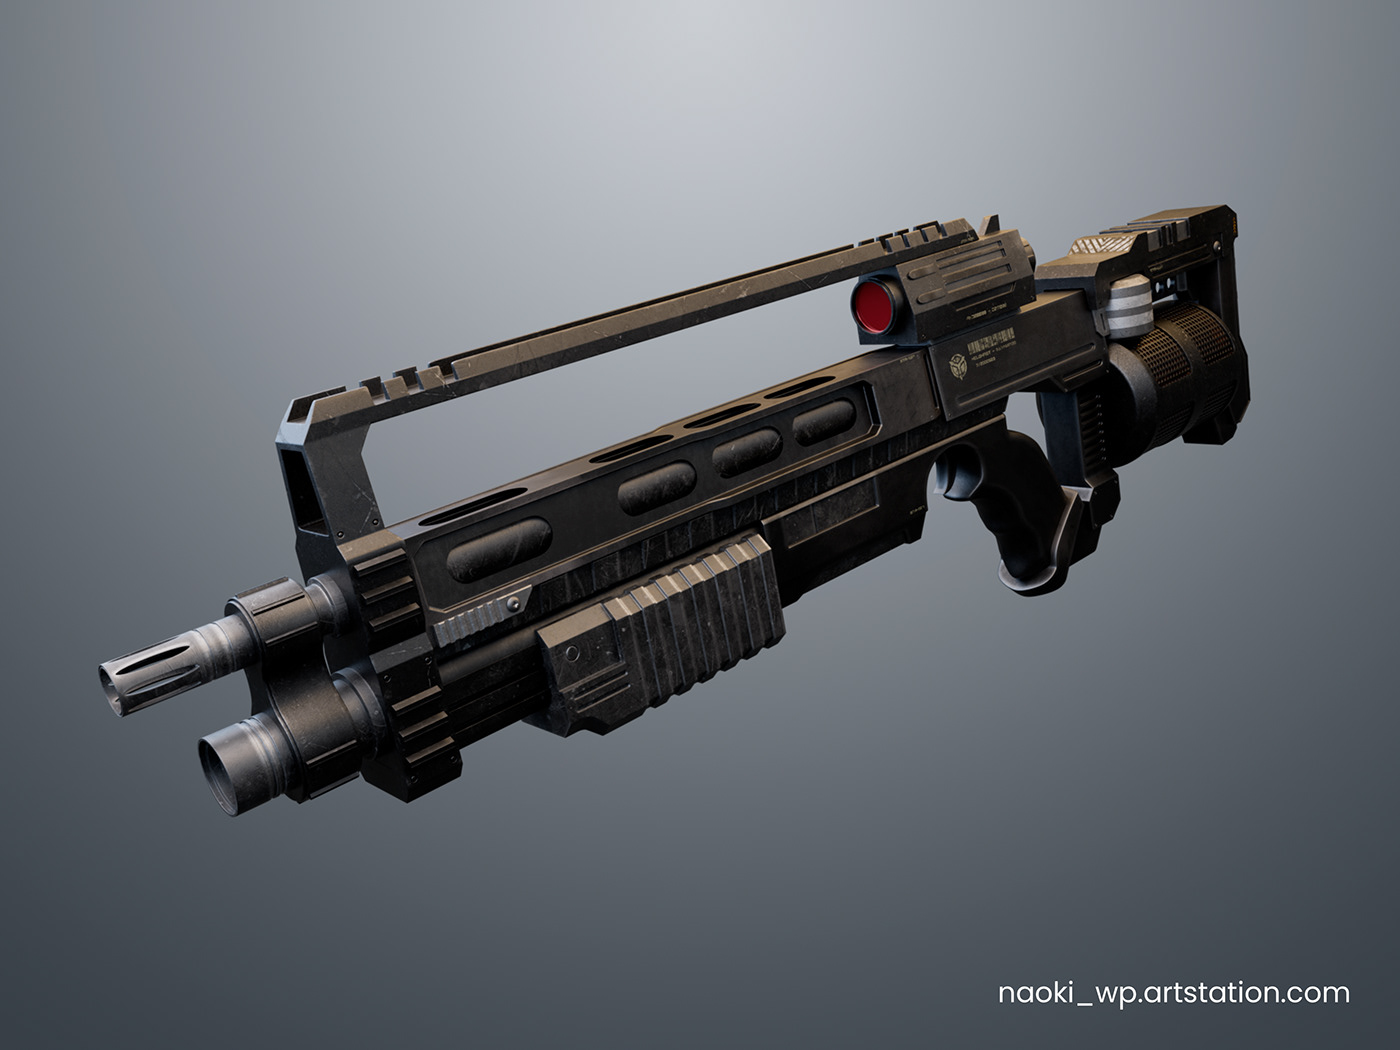 3d modeling 3D Render blender Weapon video game concept art props Game Art